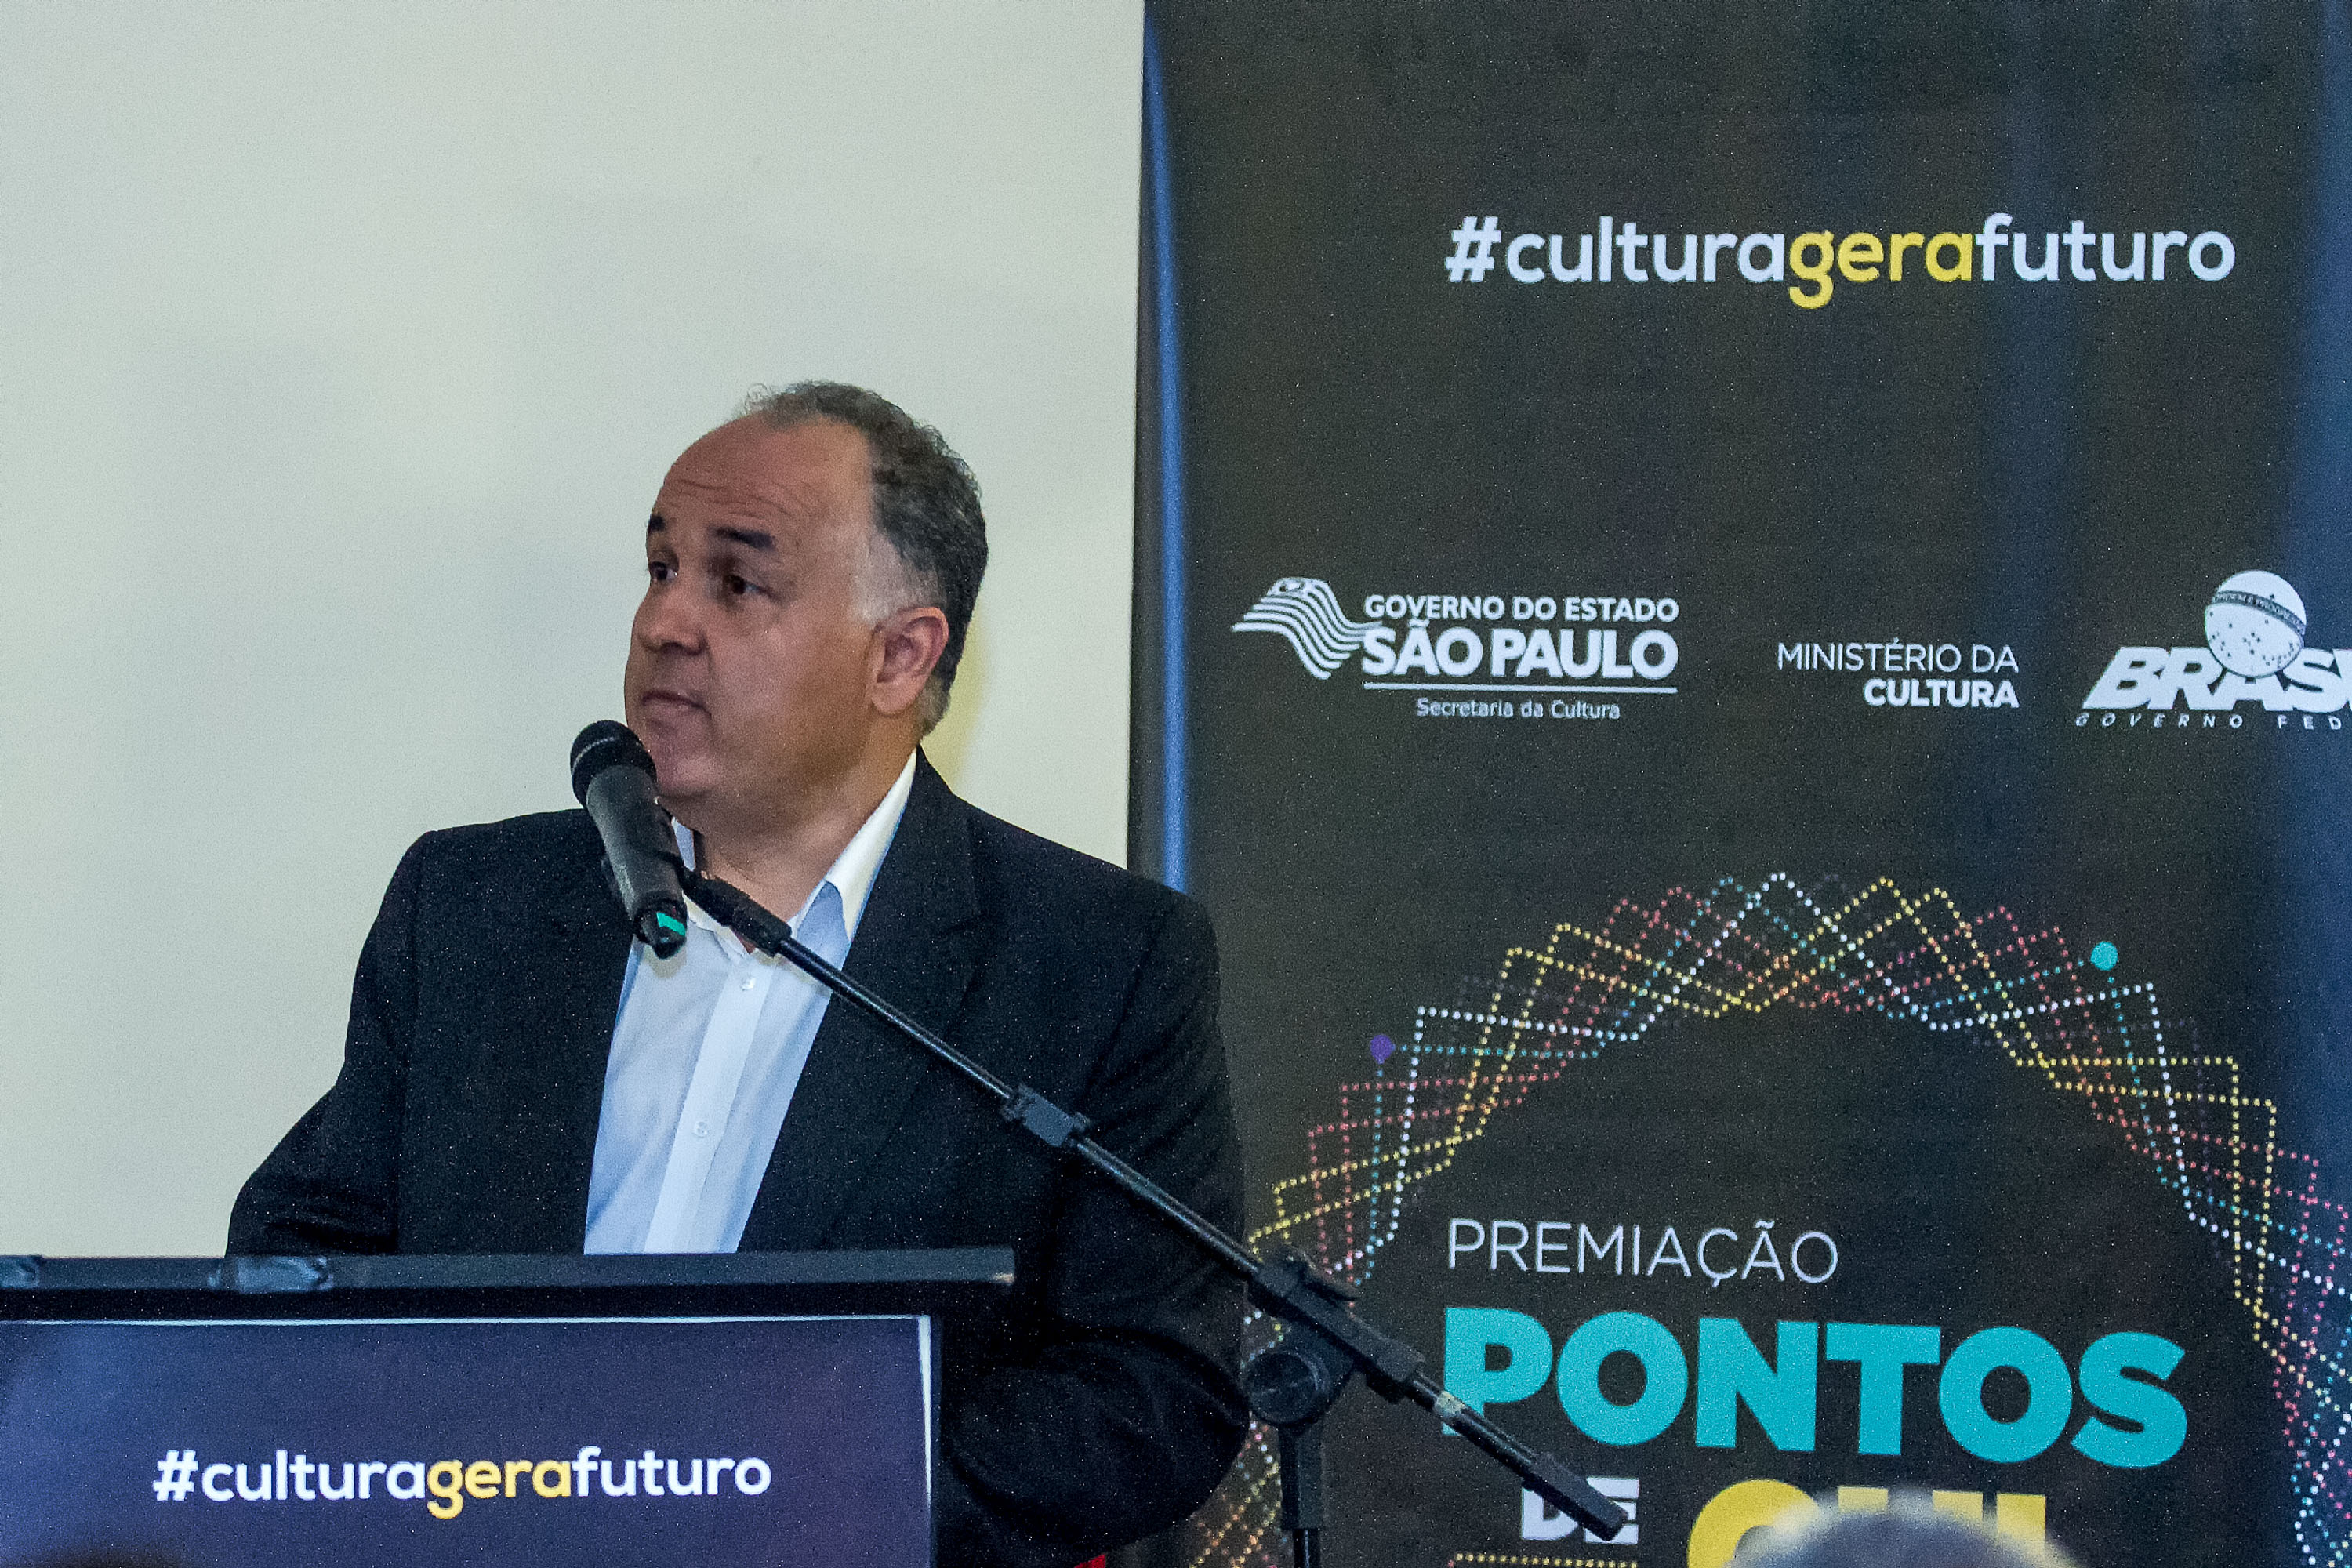 Premiação dos Pontos de Cultura - Foto: Secretaria da Cultura do Estado de São Paulo